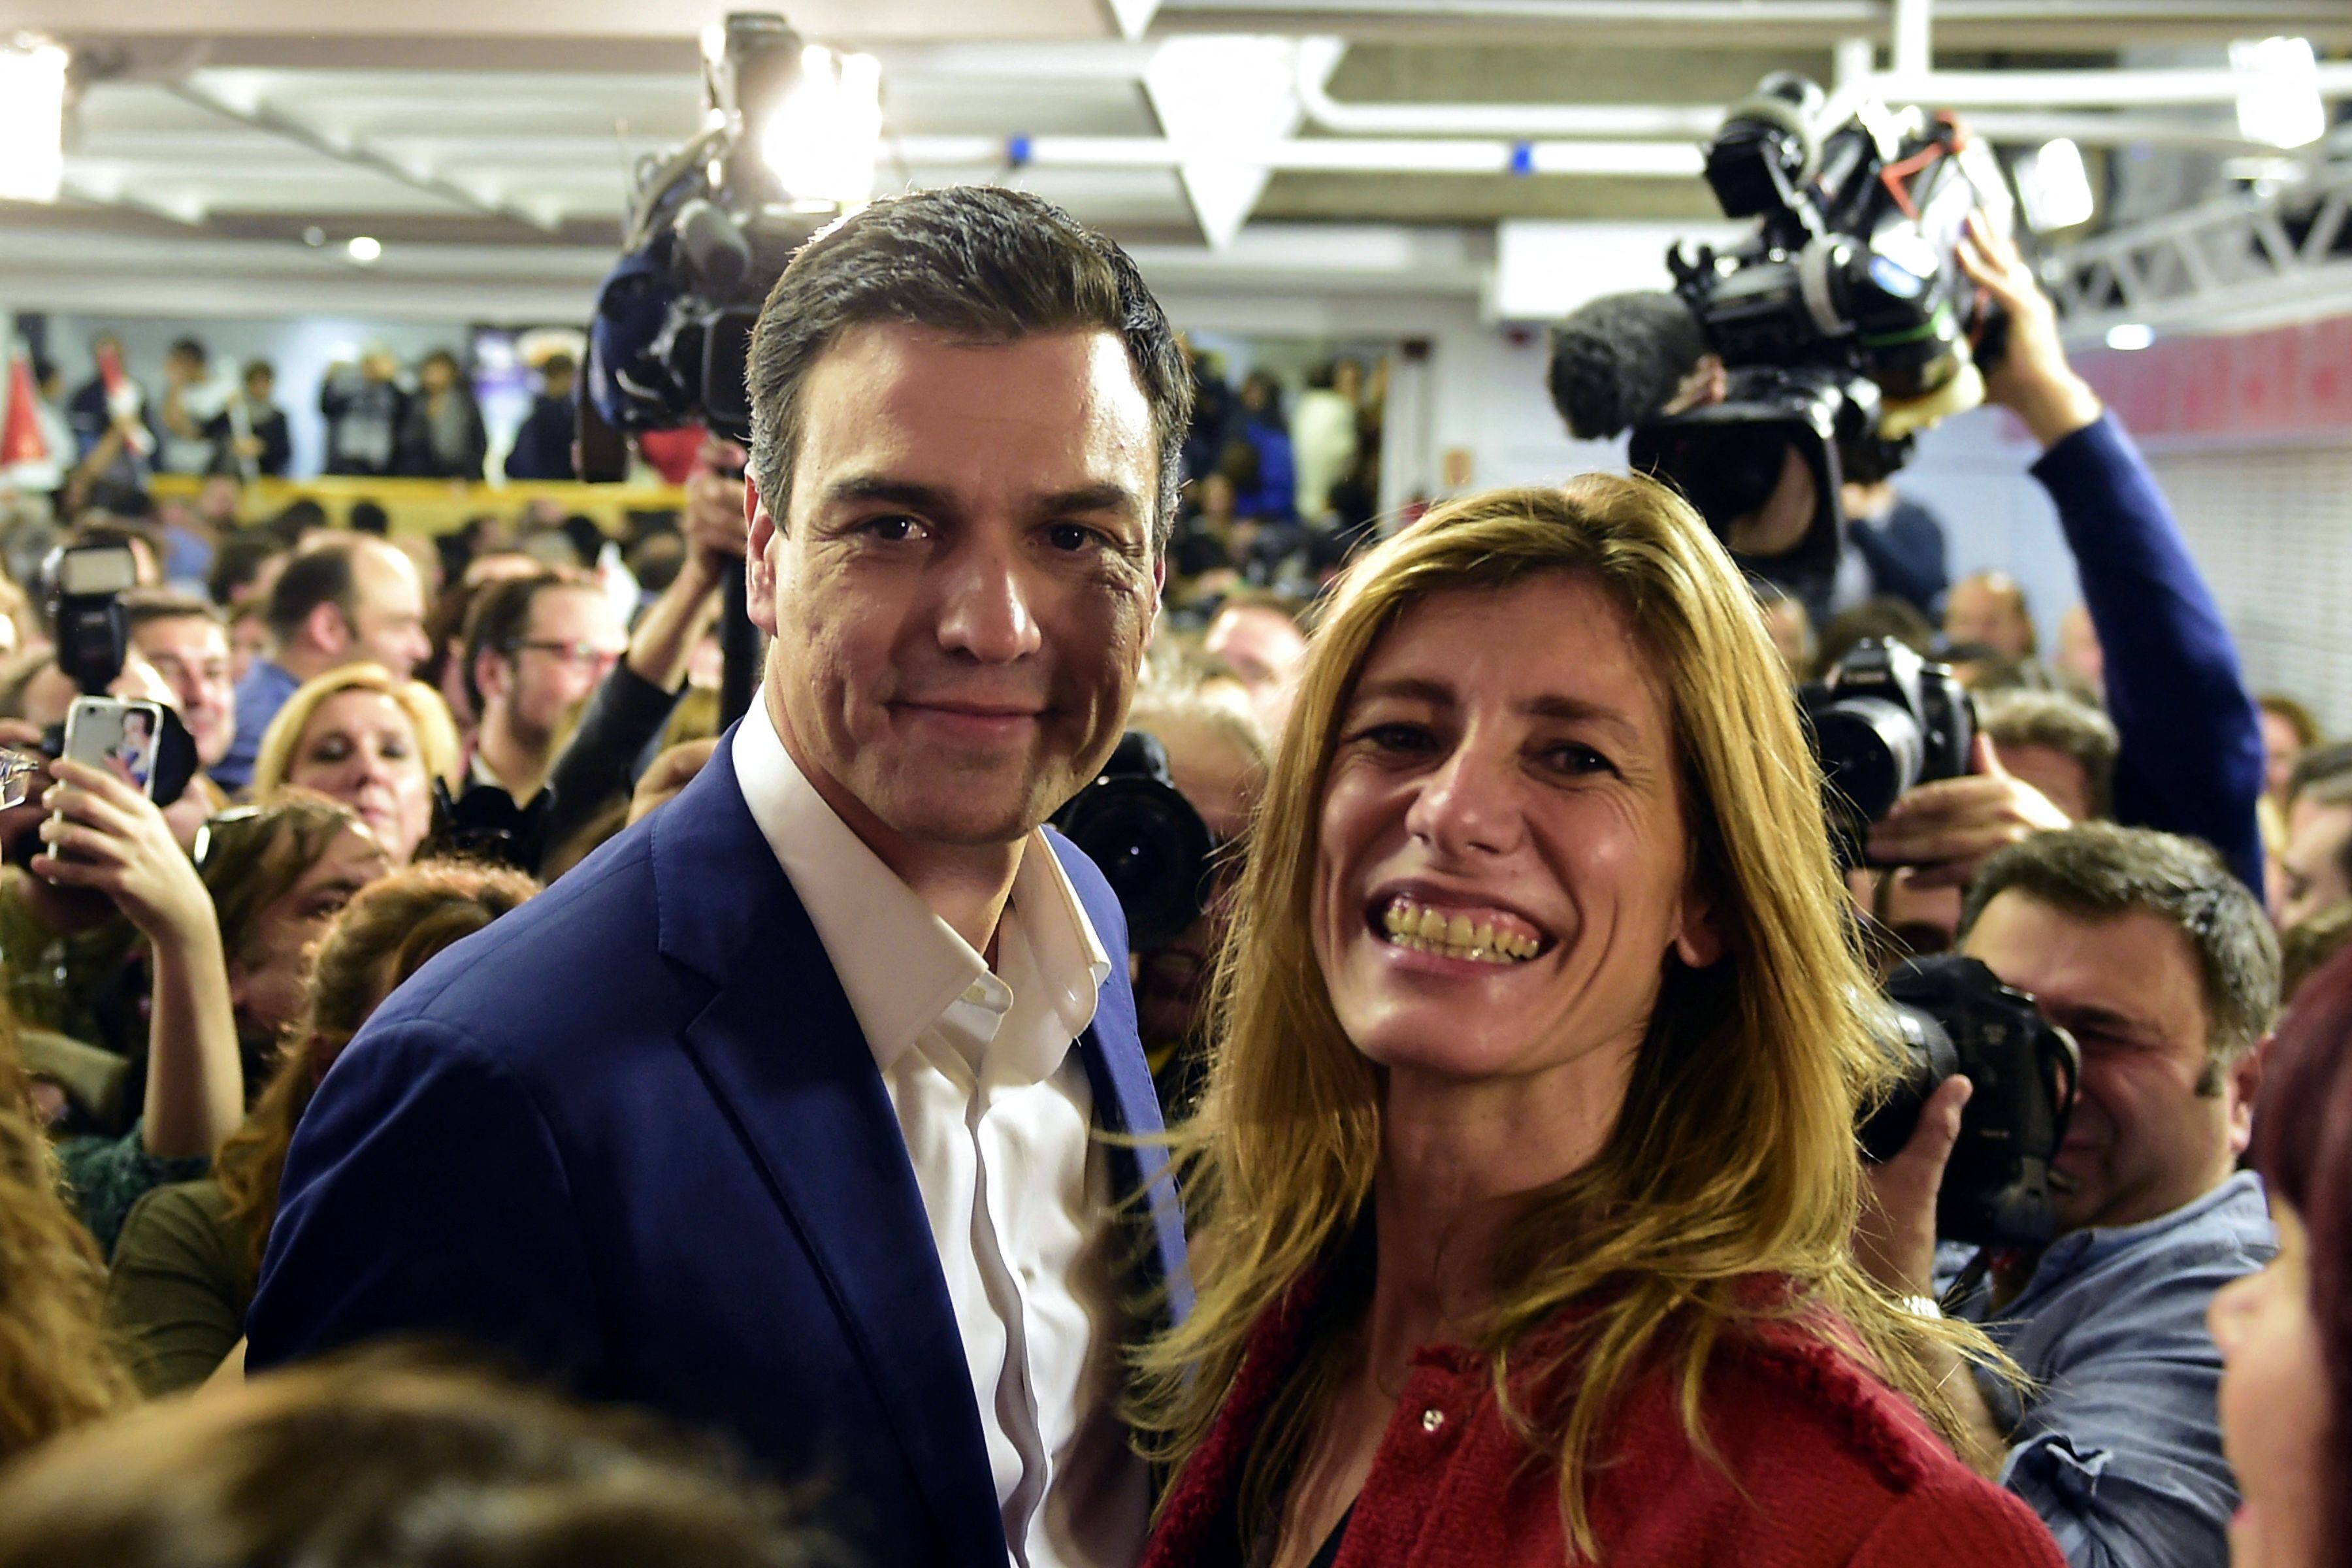 Pedro Sánchez y su esposa Begoña Gómez posan después de los resultados parciales de las elecciones generales de España en Madrid el 20 de diciembre de 2015. (Foto de JAVIER SORIANO / AFP).